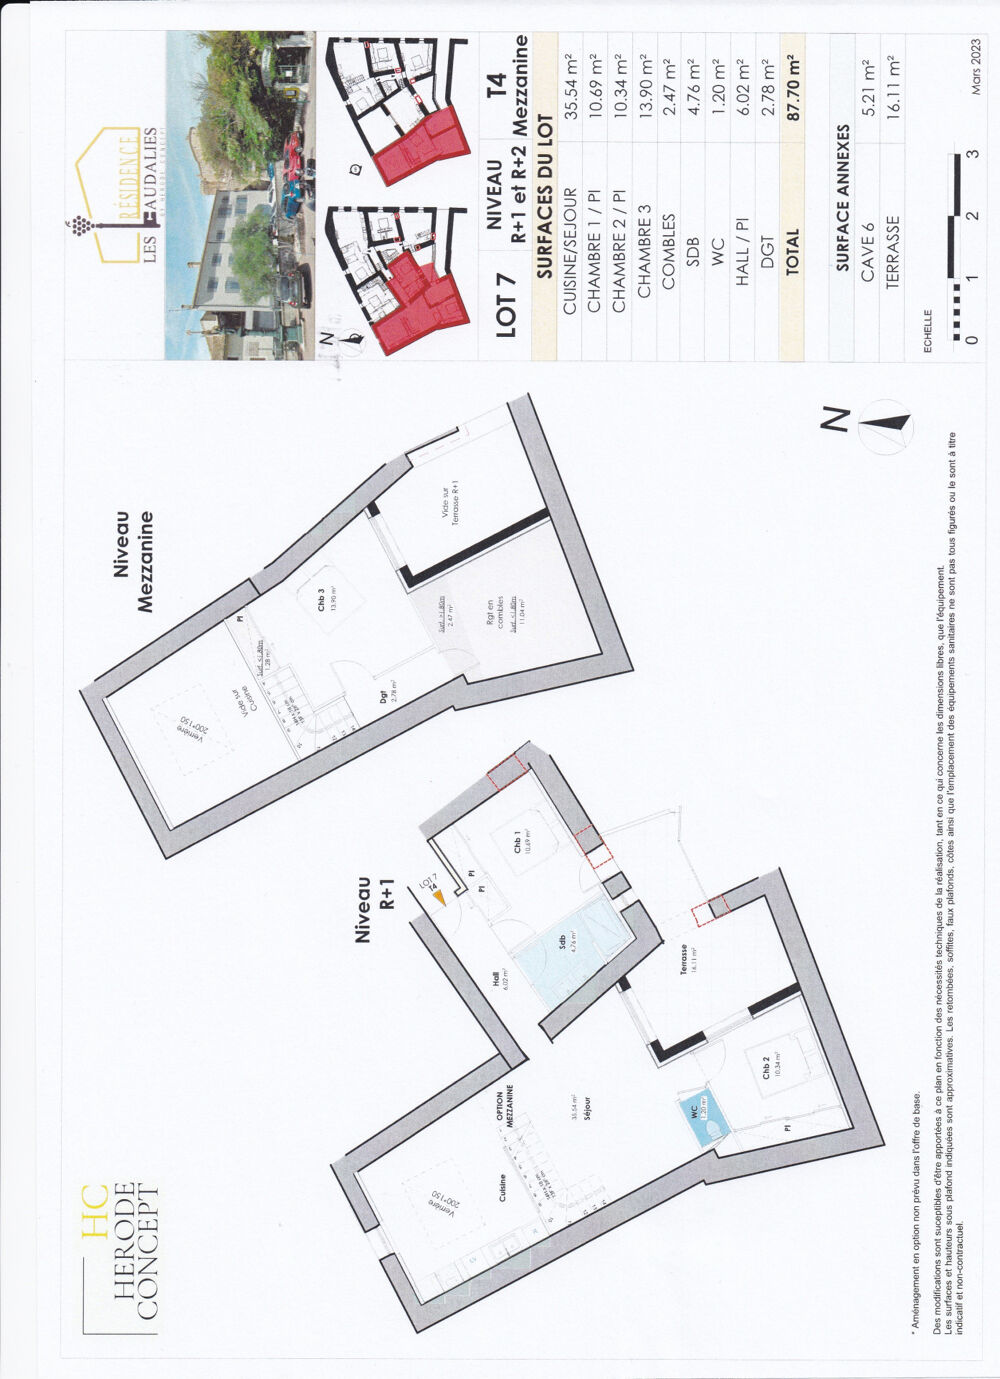 Vente Appartement Suze-La-Rousse : Appartement neuf de 87.70 m2 avec terrasse. Suze la rousse